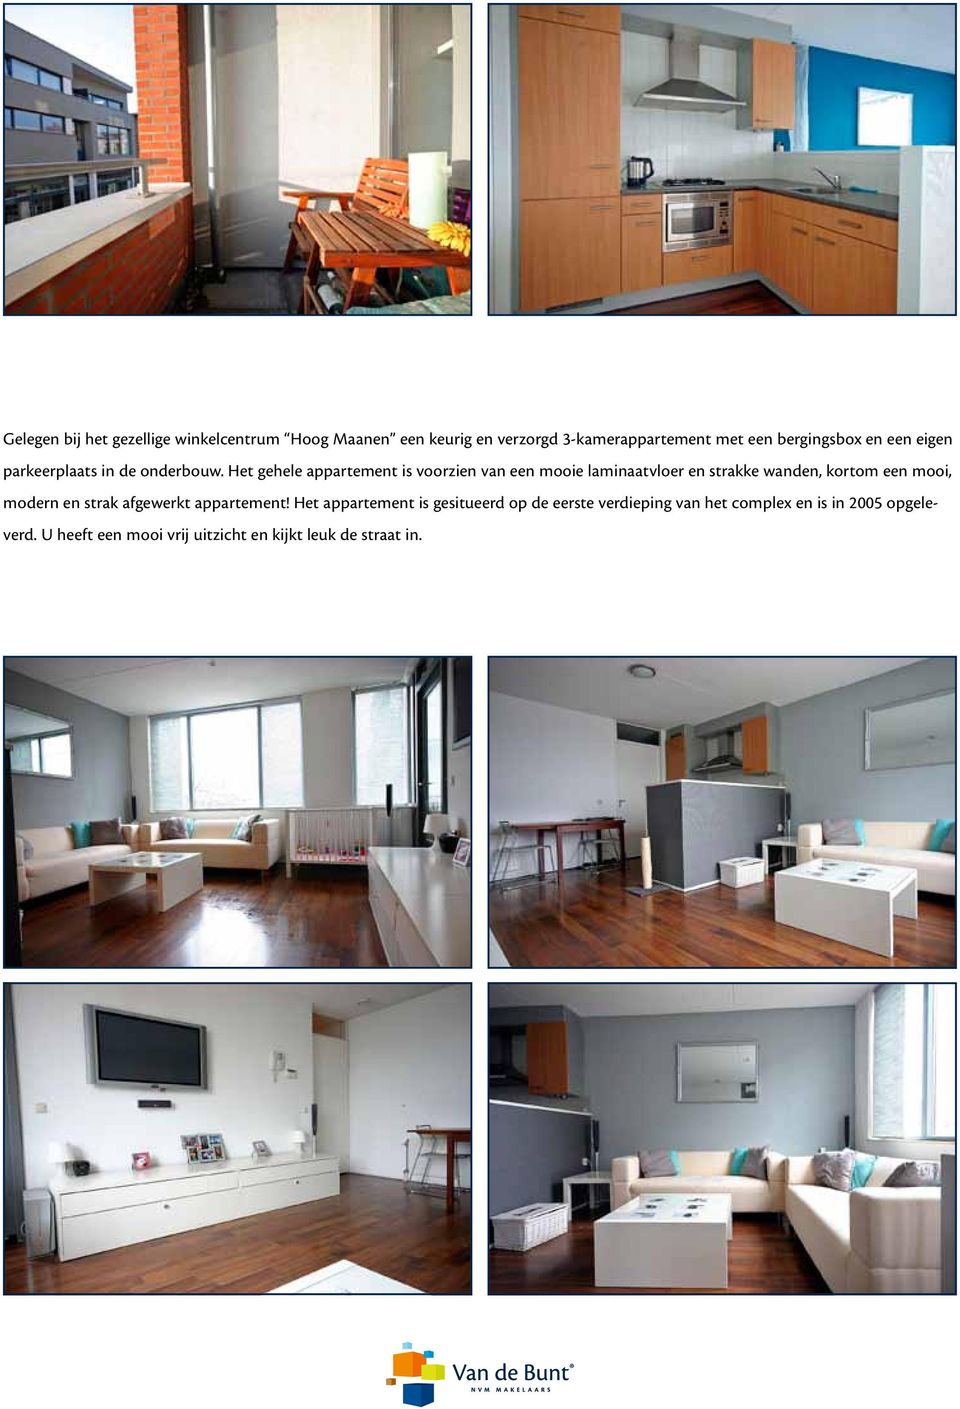 Het gehele appartement is voorzien van een mooie laminaatvloer en strakke wanden, kortom een mooi, modern en